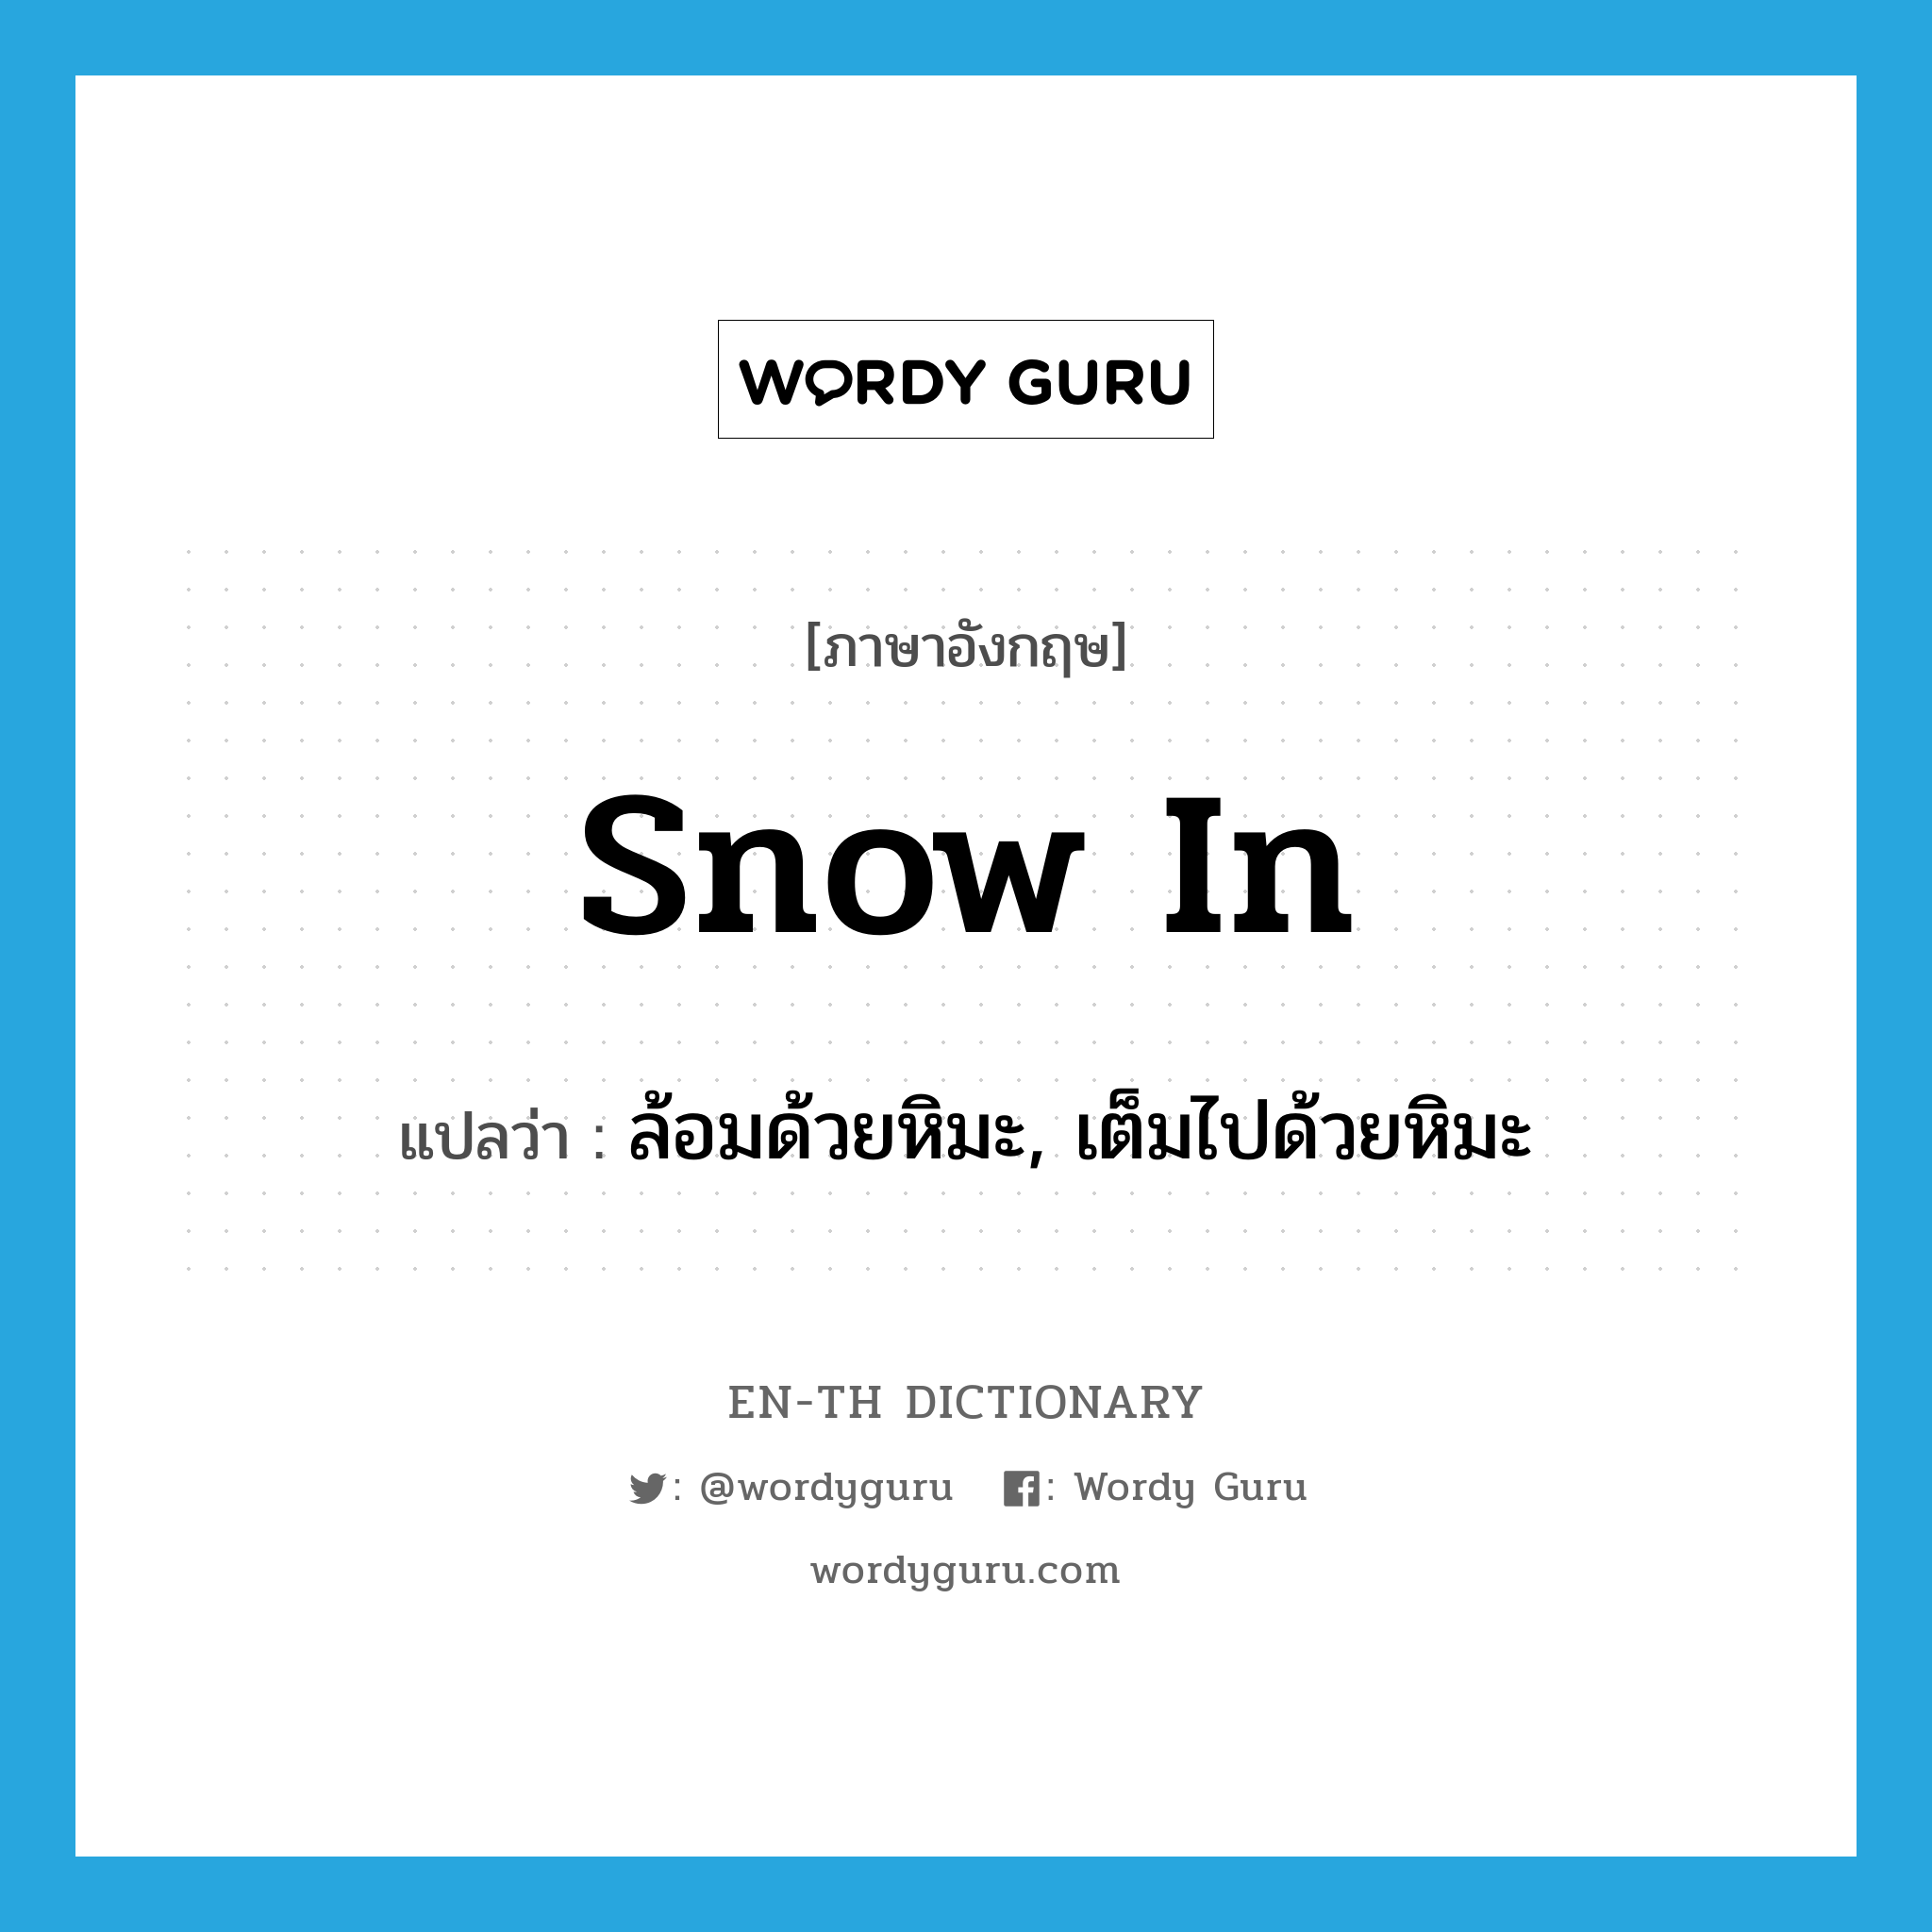 ล้อมด้วยหิมะ, เต็มไปด้วยหิมะ ภาษาอังกฤษ?, คำศัพท์ภาษาอังกฤษ ล้อมด้วยหิมะ, เต็มไปด้วยหิมะ แปลว่า snow in ประเภท PHRV หมวด PHRV